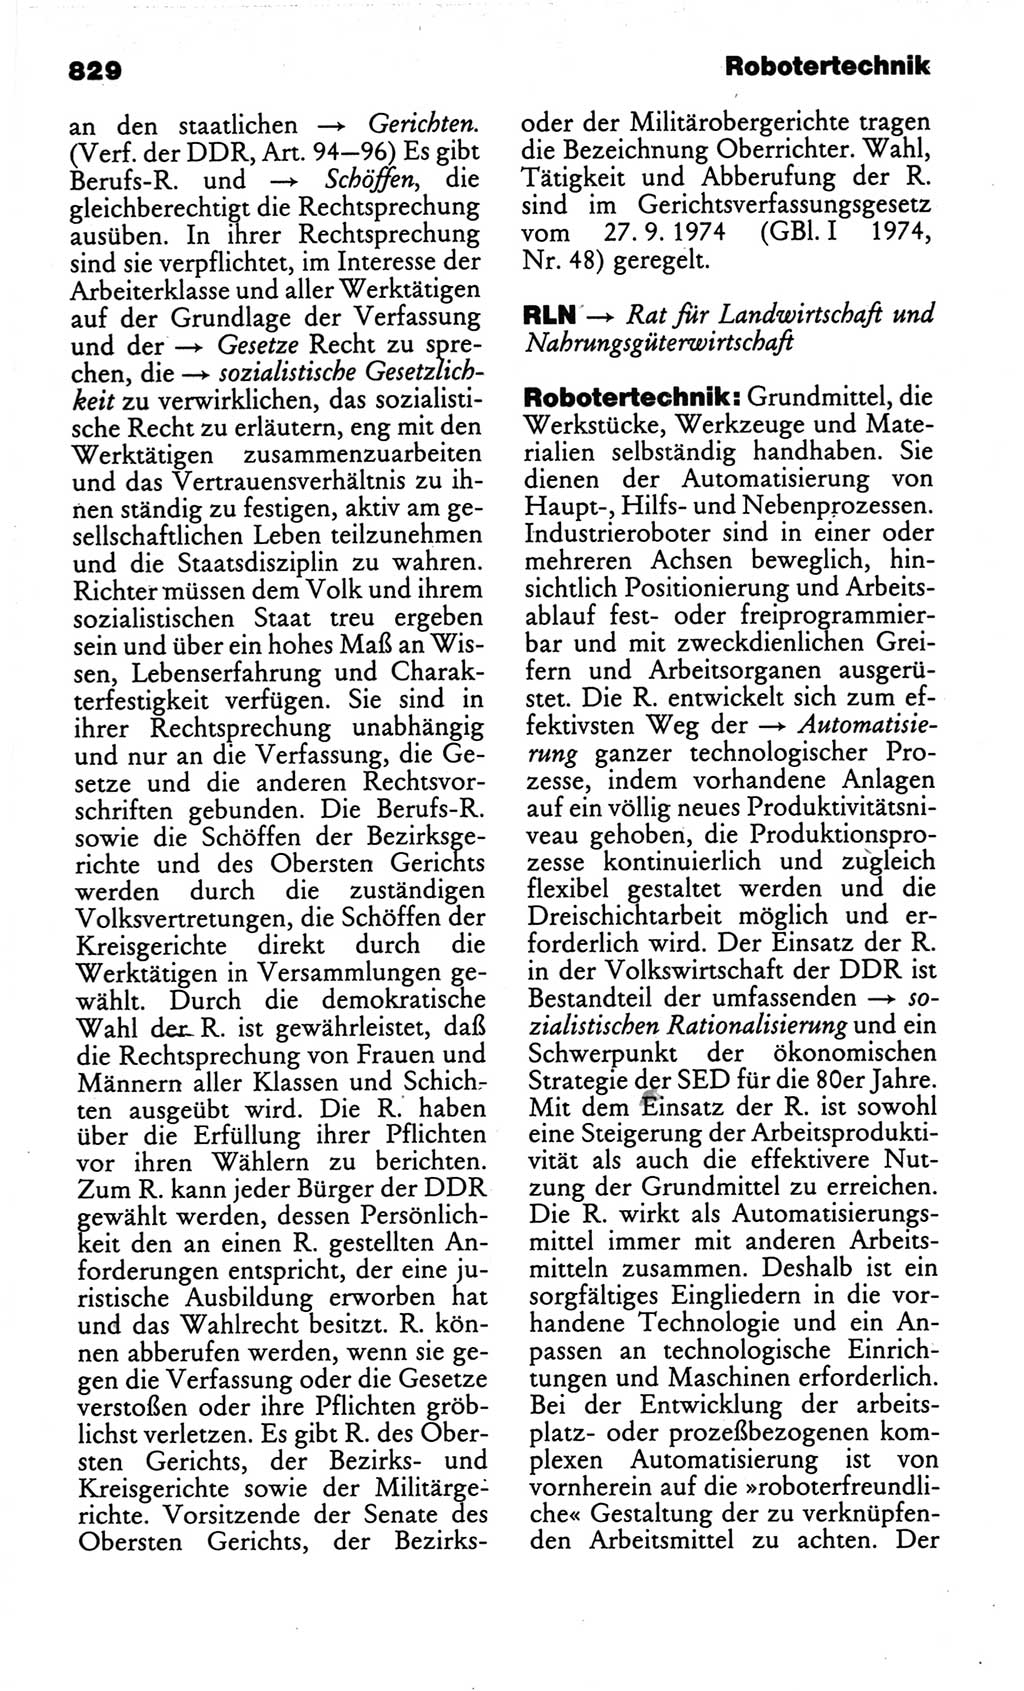 Kleines politisches Wörterbuch [Deutsche Demokratische Republik (DDR)] 1986, Seite 829 (Kl. pol. Wb. DDR 1986, S. 829)